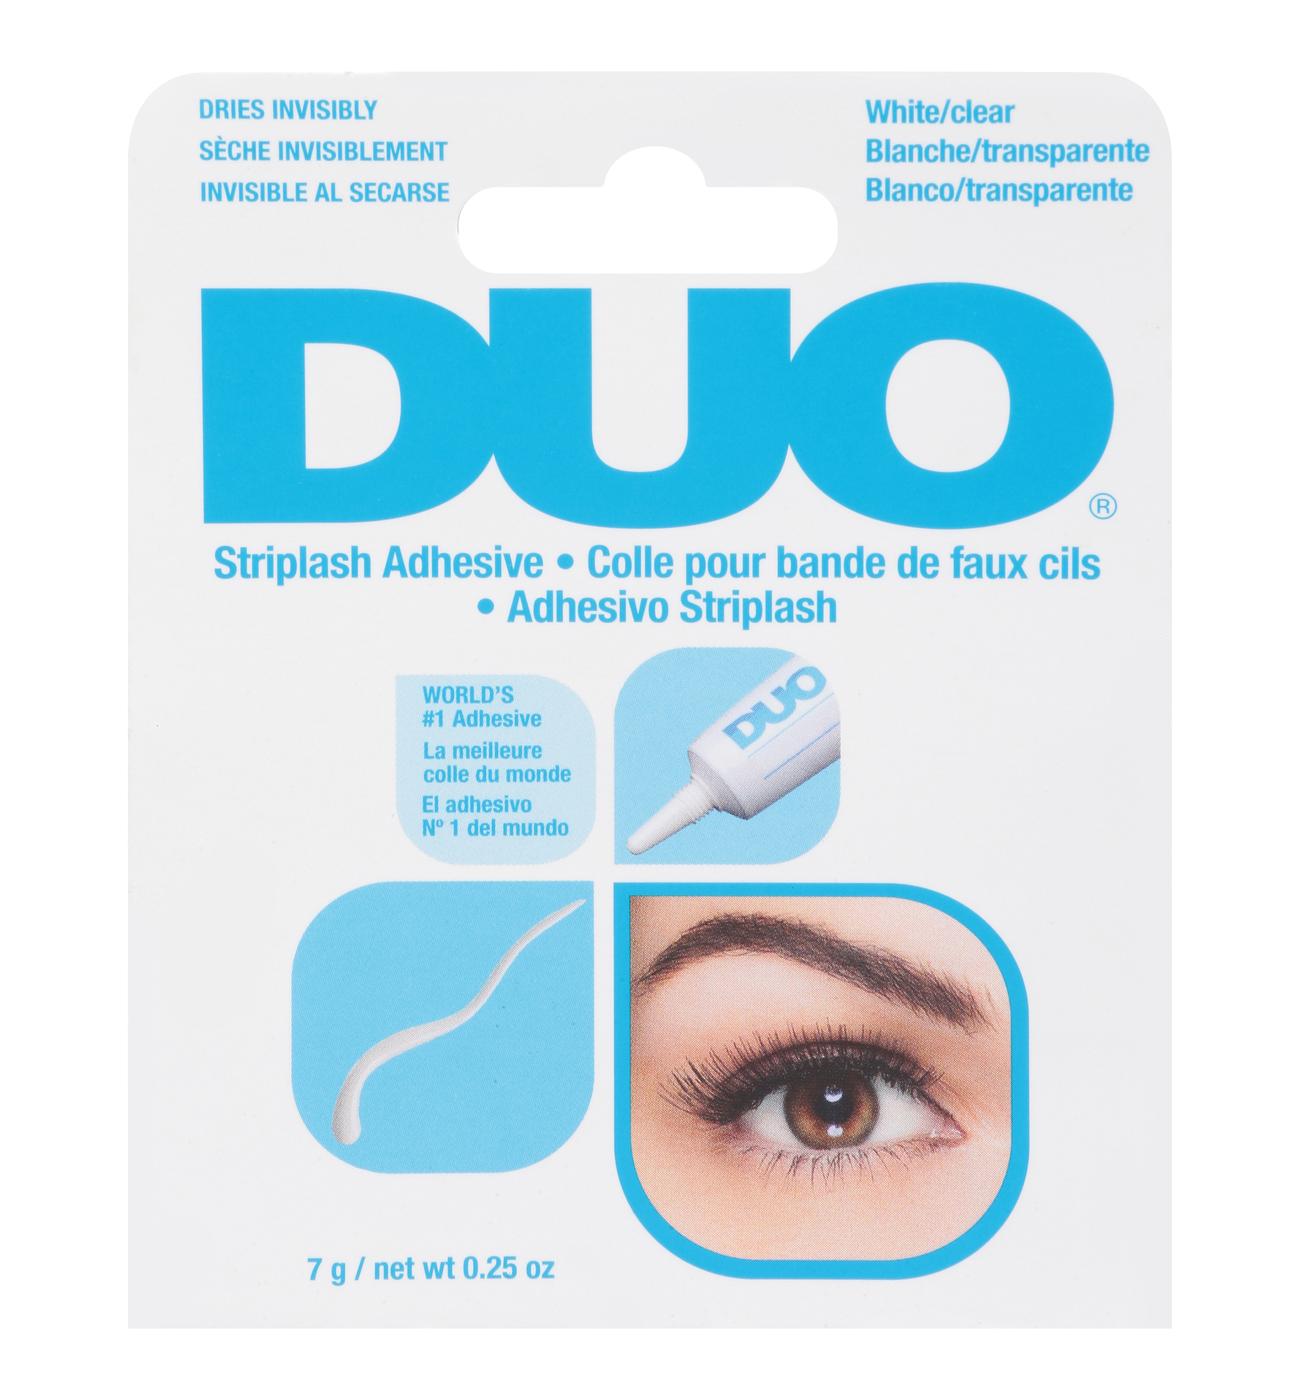 Duo White/Clear Eyelash Adhesive; image 1 of 2